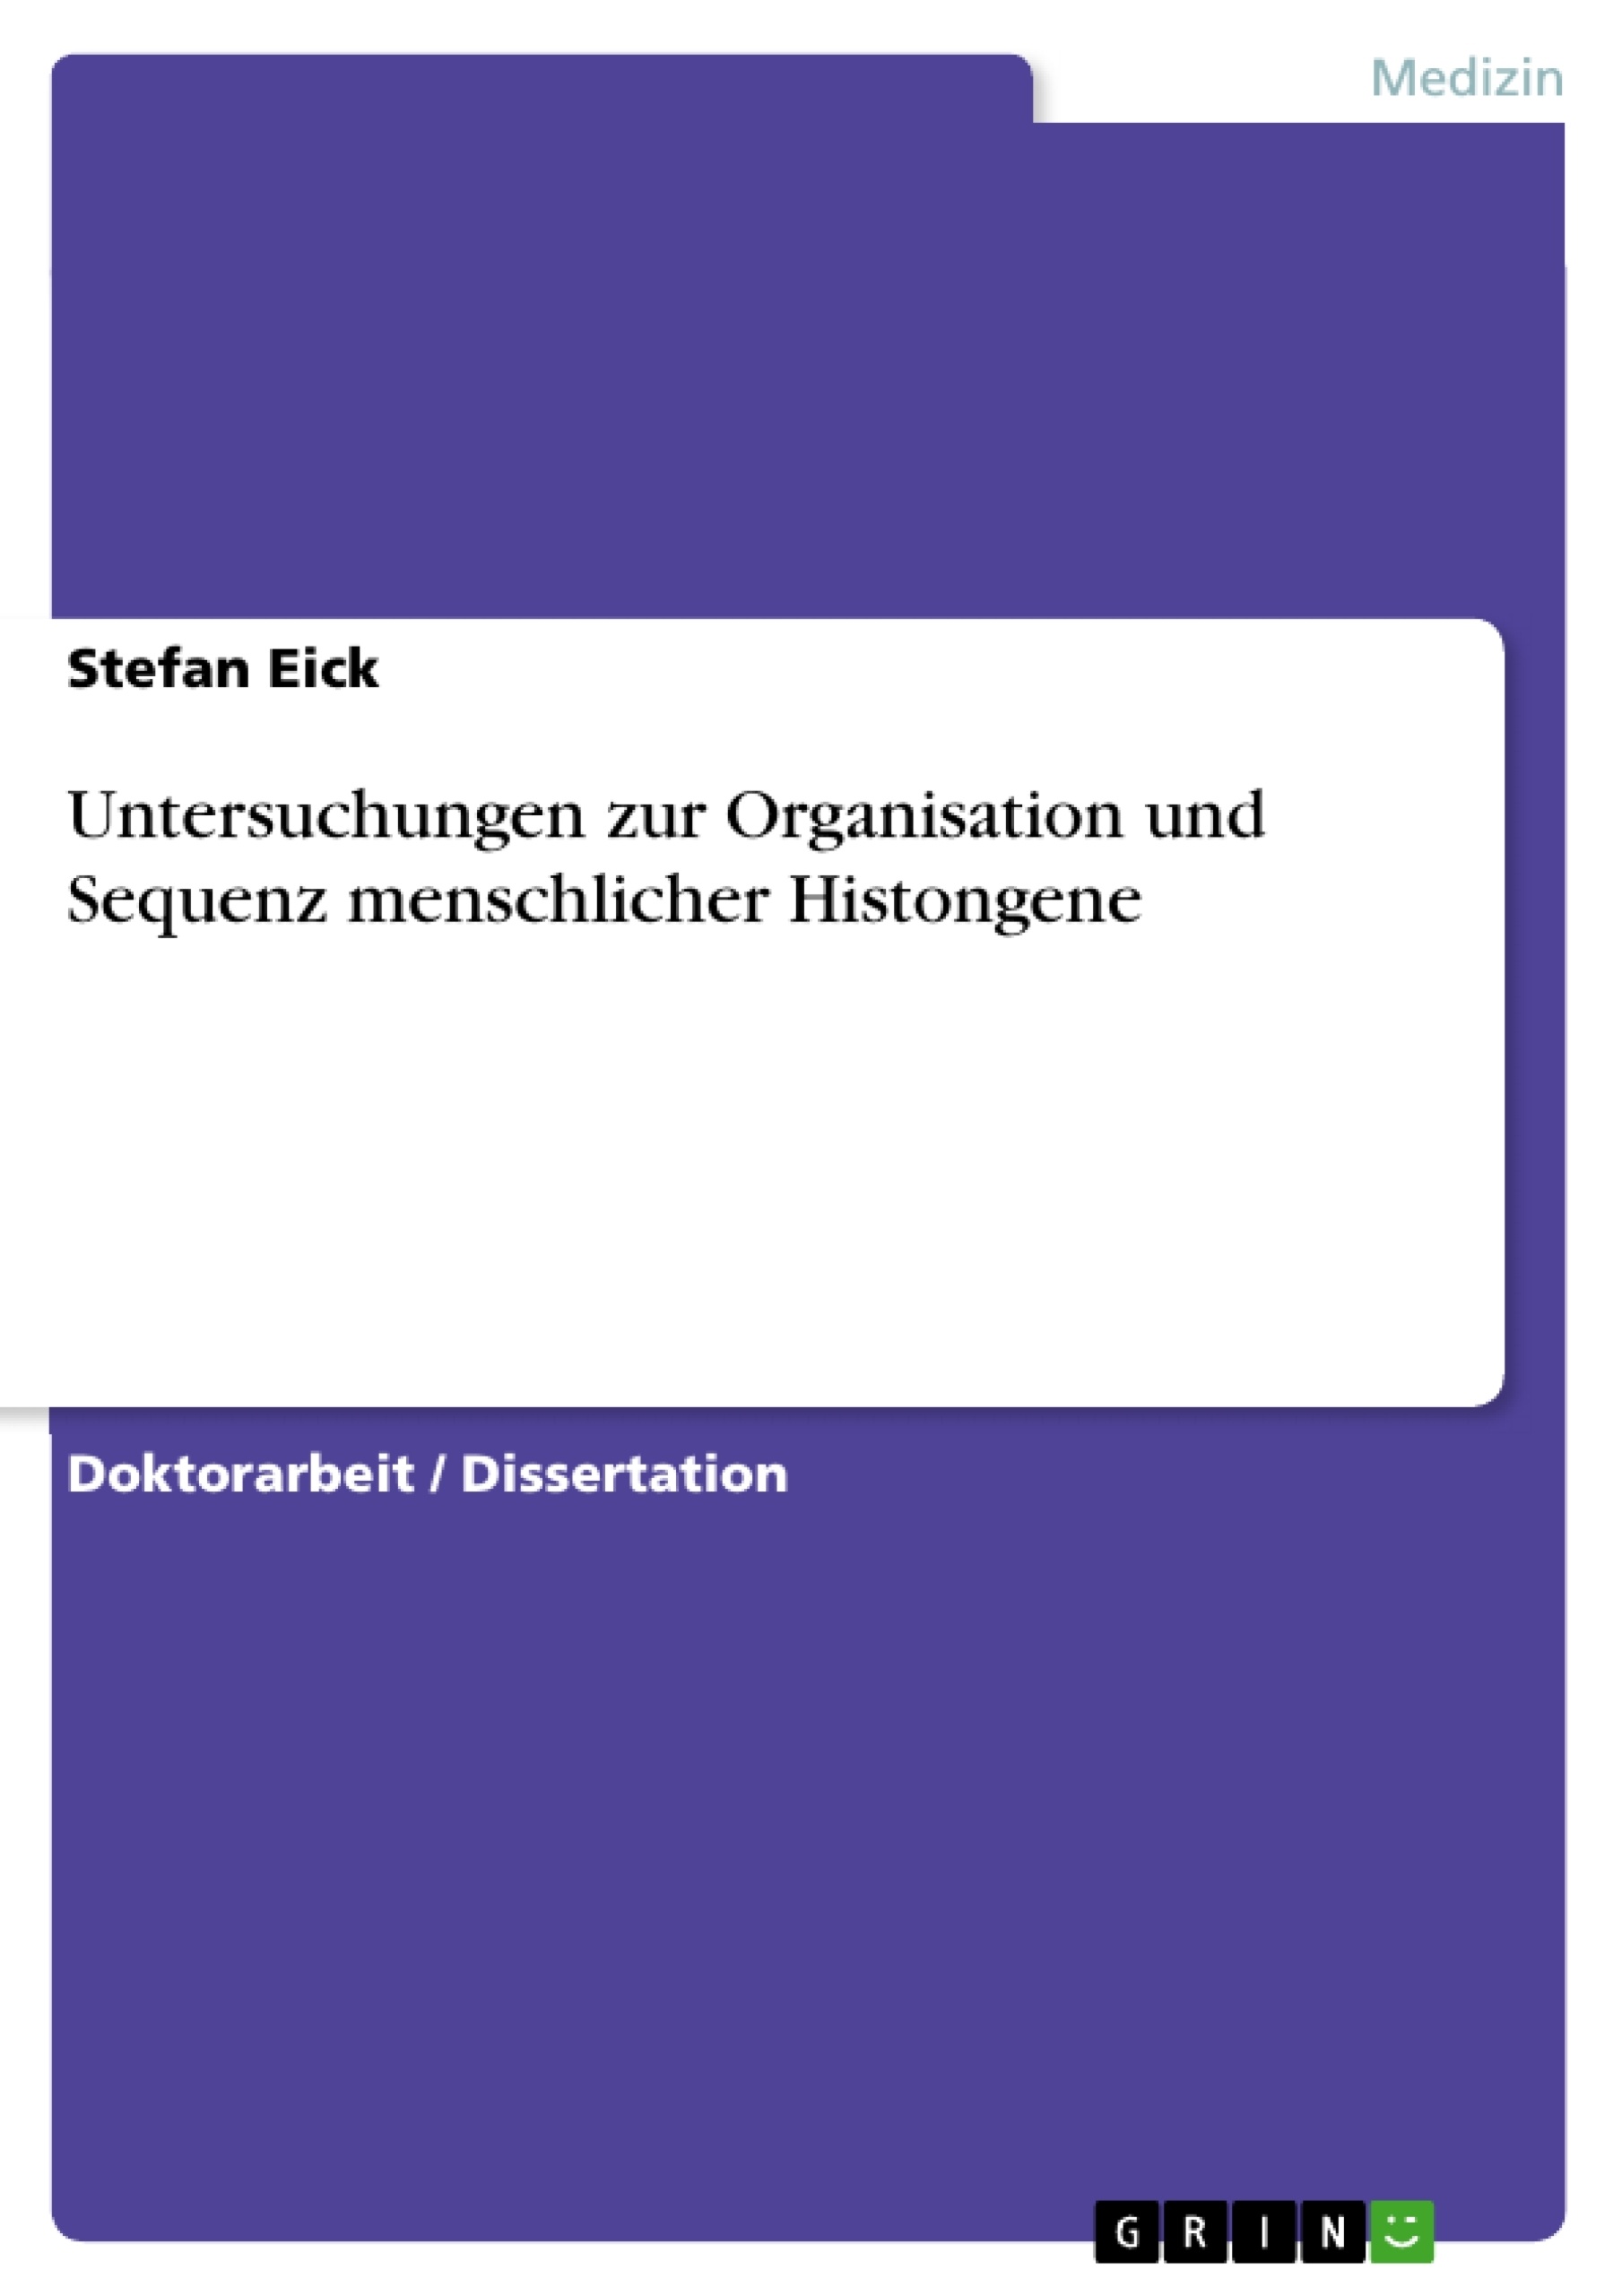 Title: Untersuchungen zur Organisation und Sequenz menschlicher Histongene